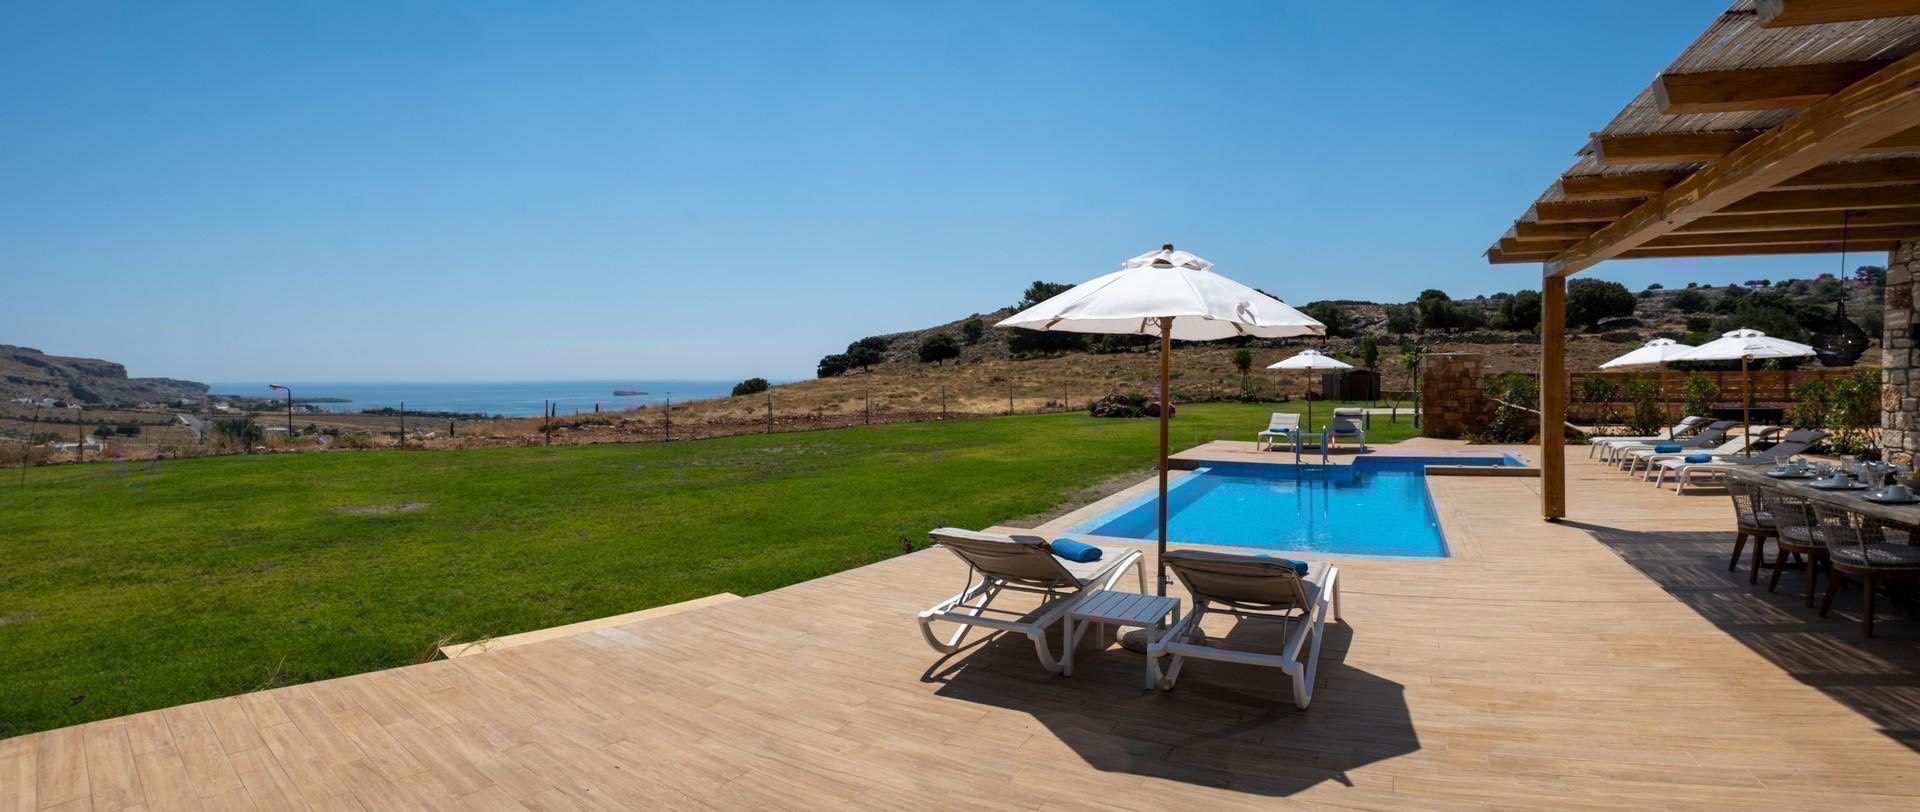 Rodos Navarone Bay'de Kalabalık Aileler İçin Uygun, Özel Havuzlu, Bahçeli Villa